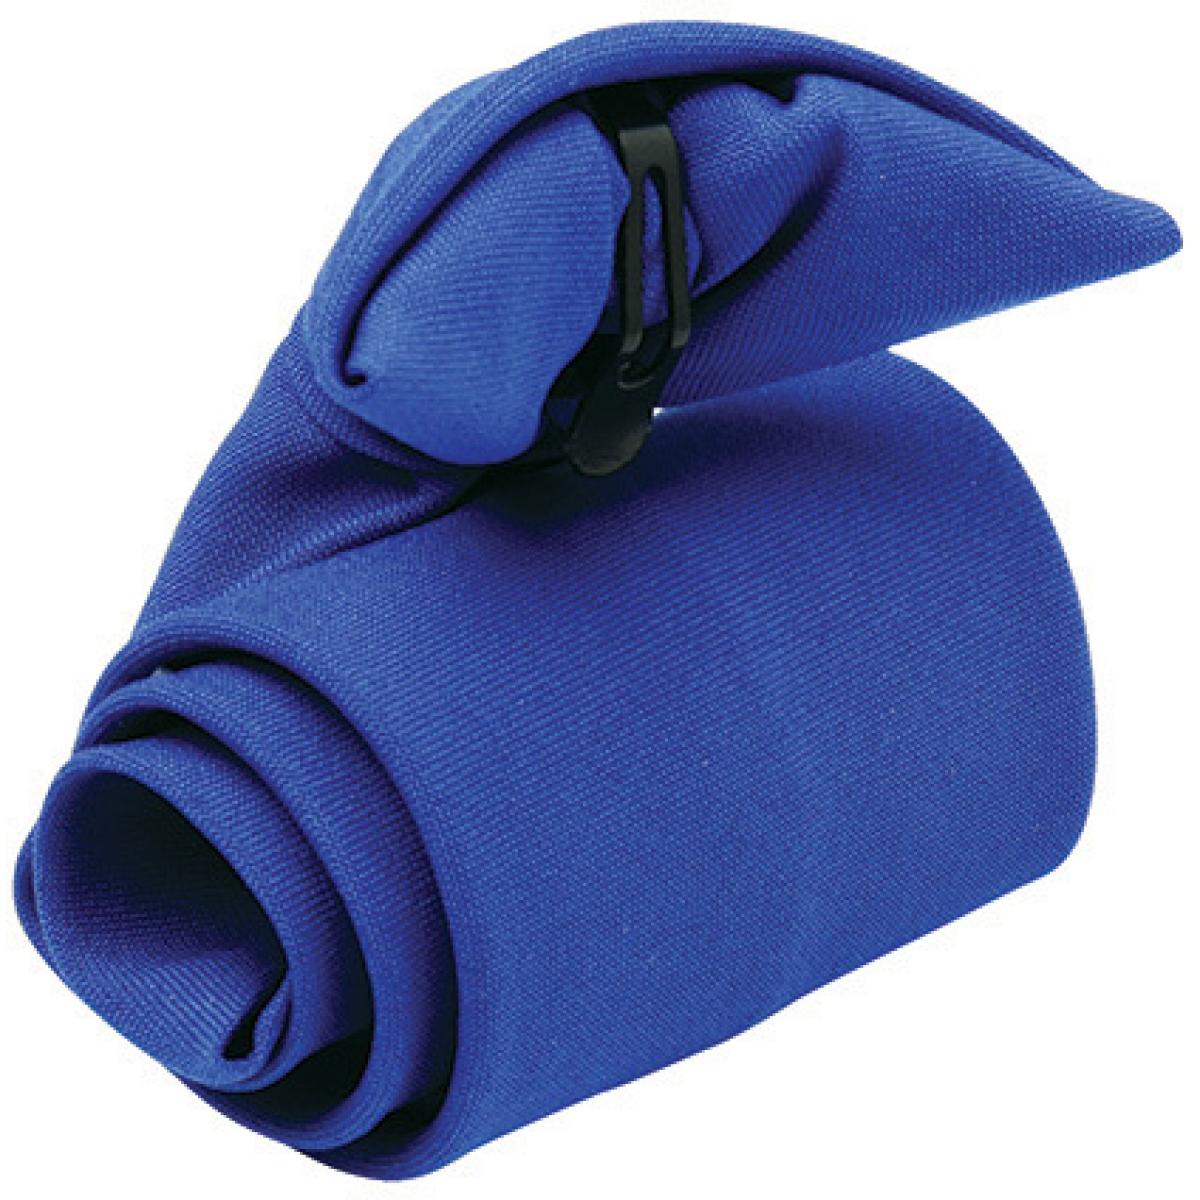 Hersteller: Premier Workwear Herstellernummer: PR710 Artikelbezeichnung: ´Clip-on´ Krawatte Farbe: Royal (ca. Pantone 286)